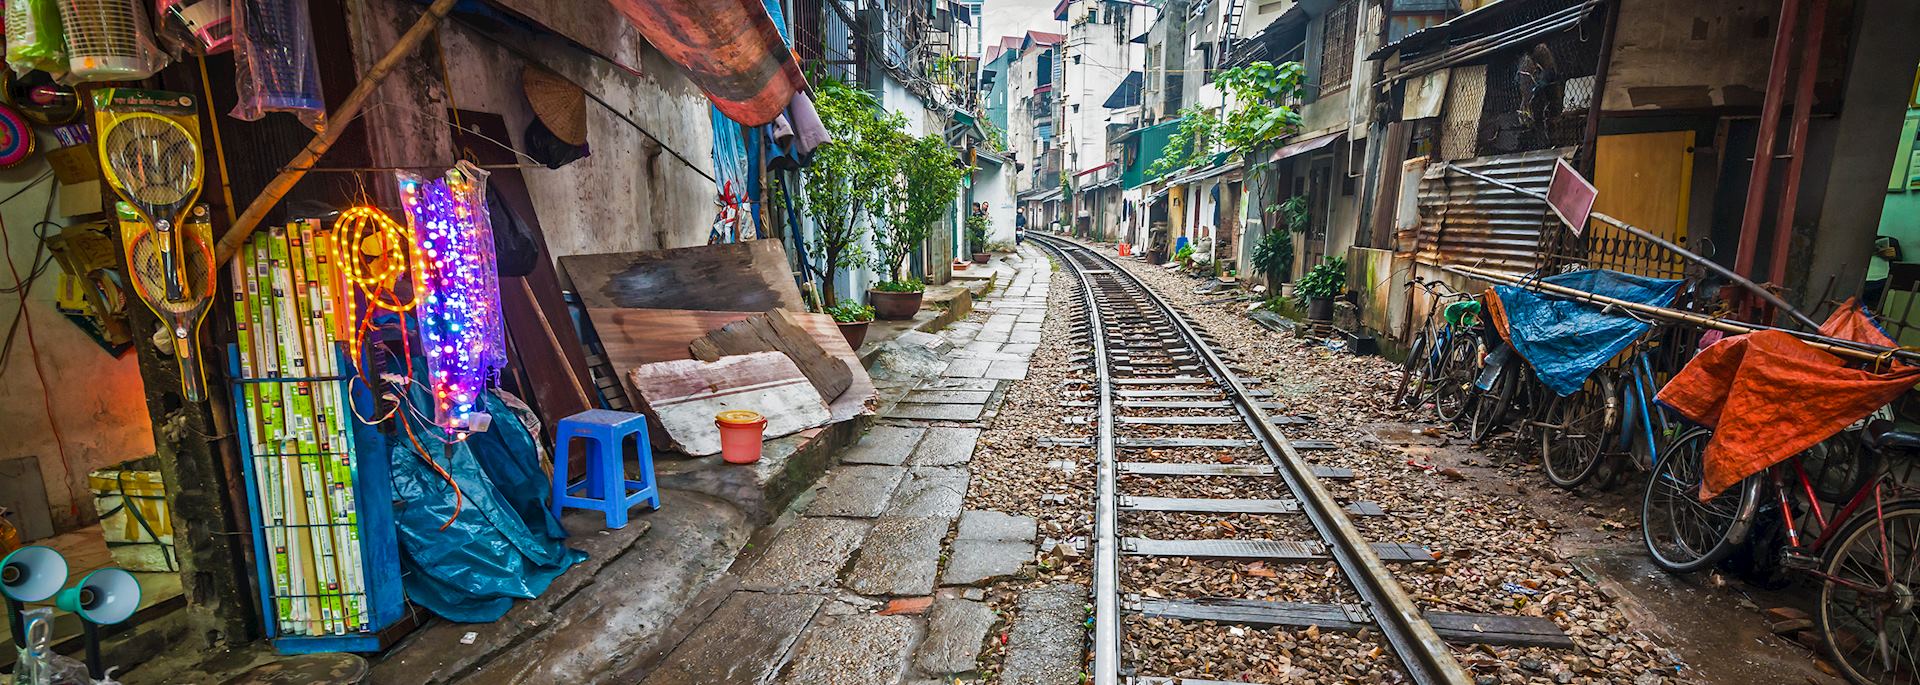 Rail line running through part of Hanoi